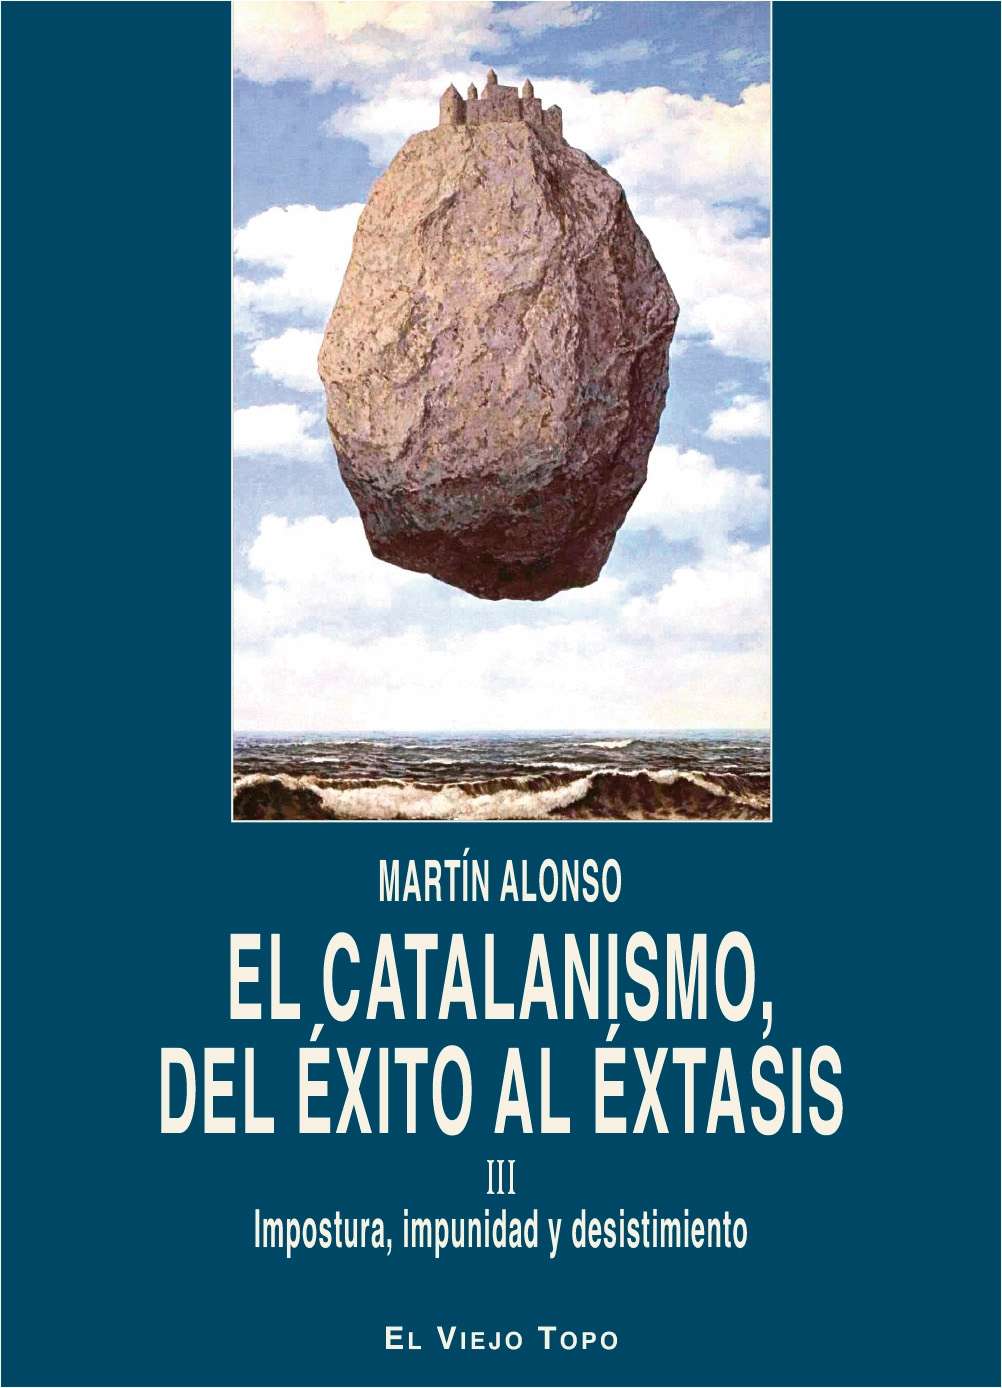 El catalanismo, del éxito al éxtasis III